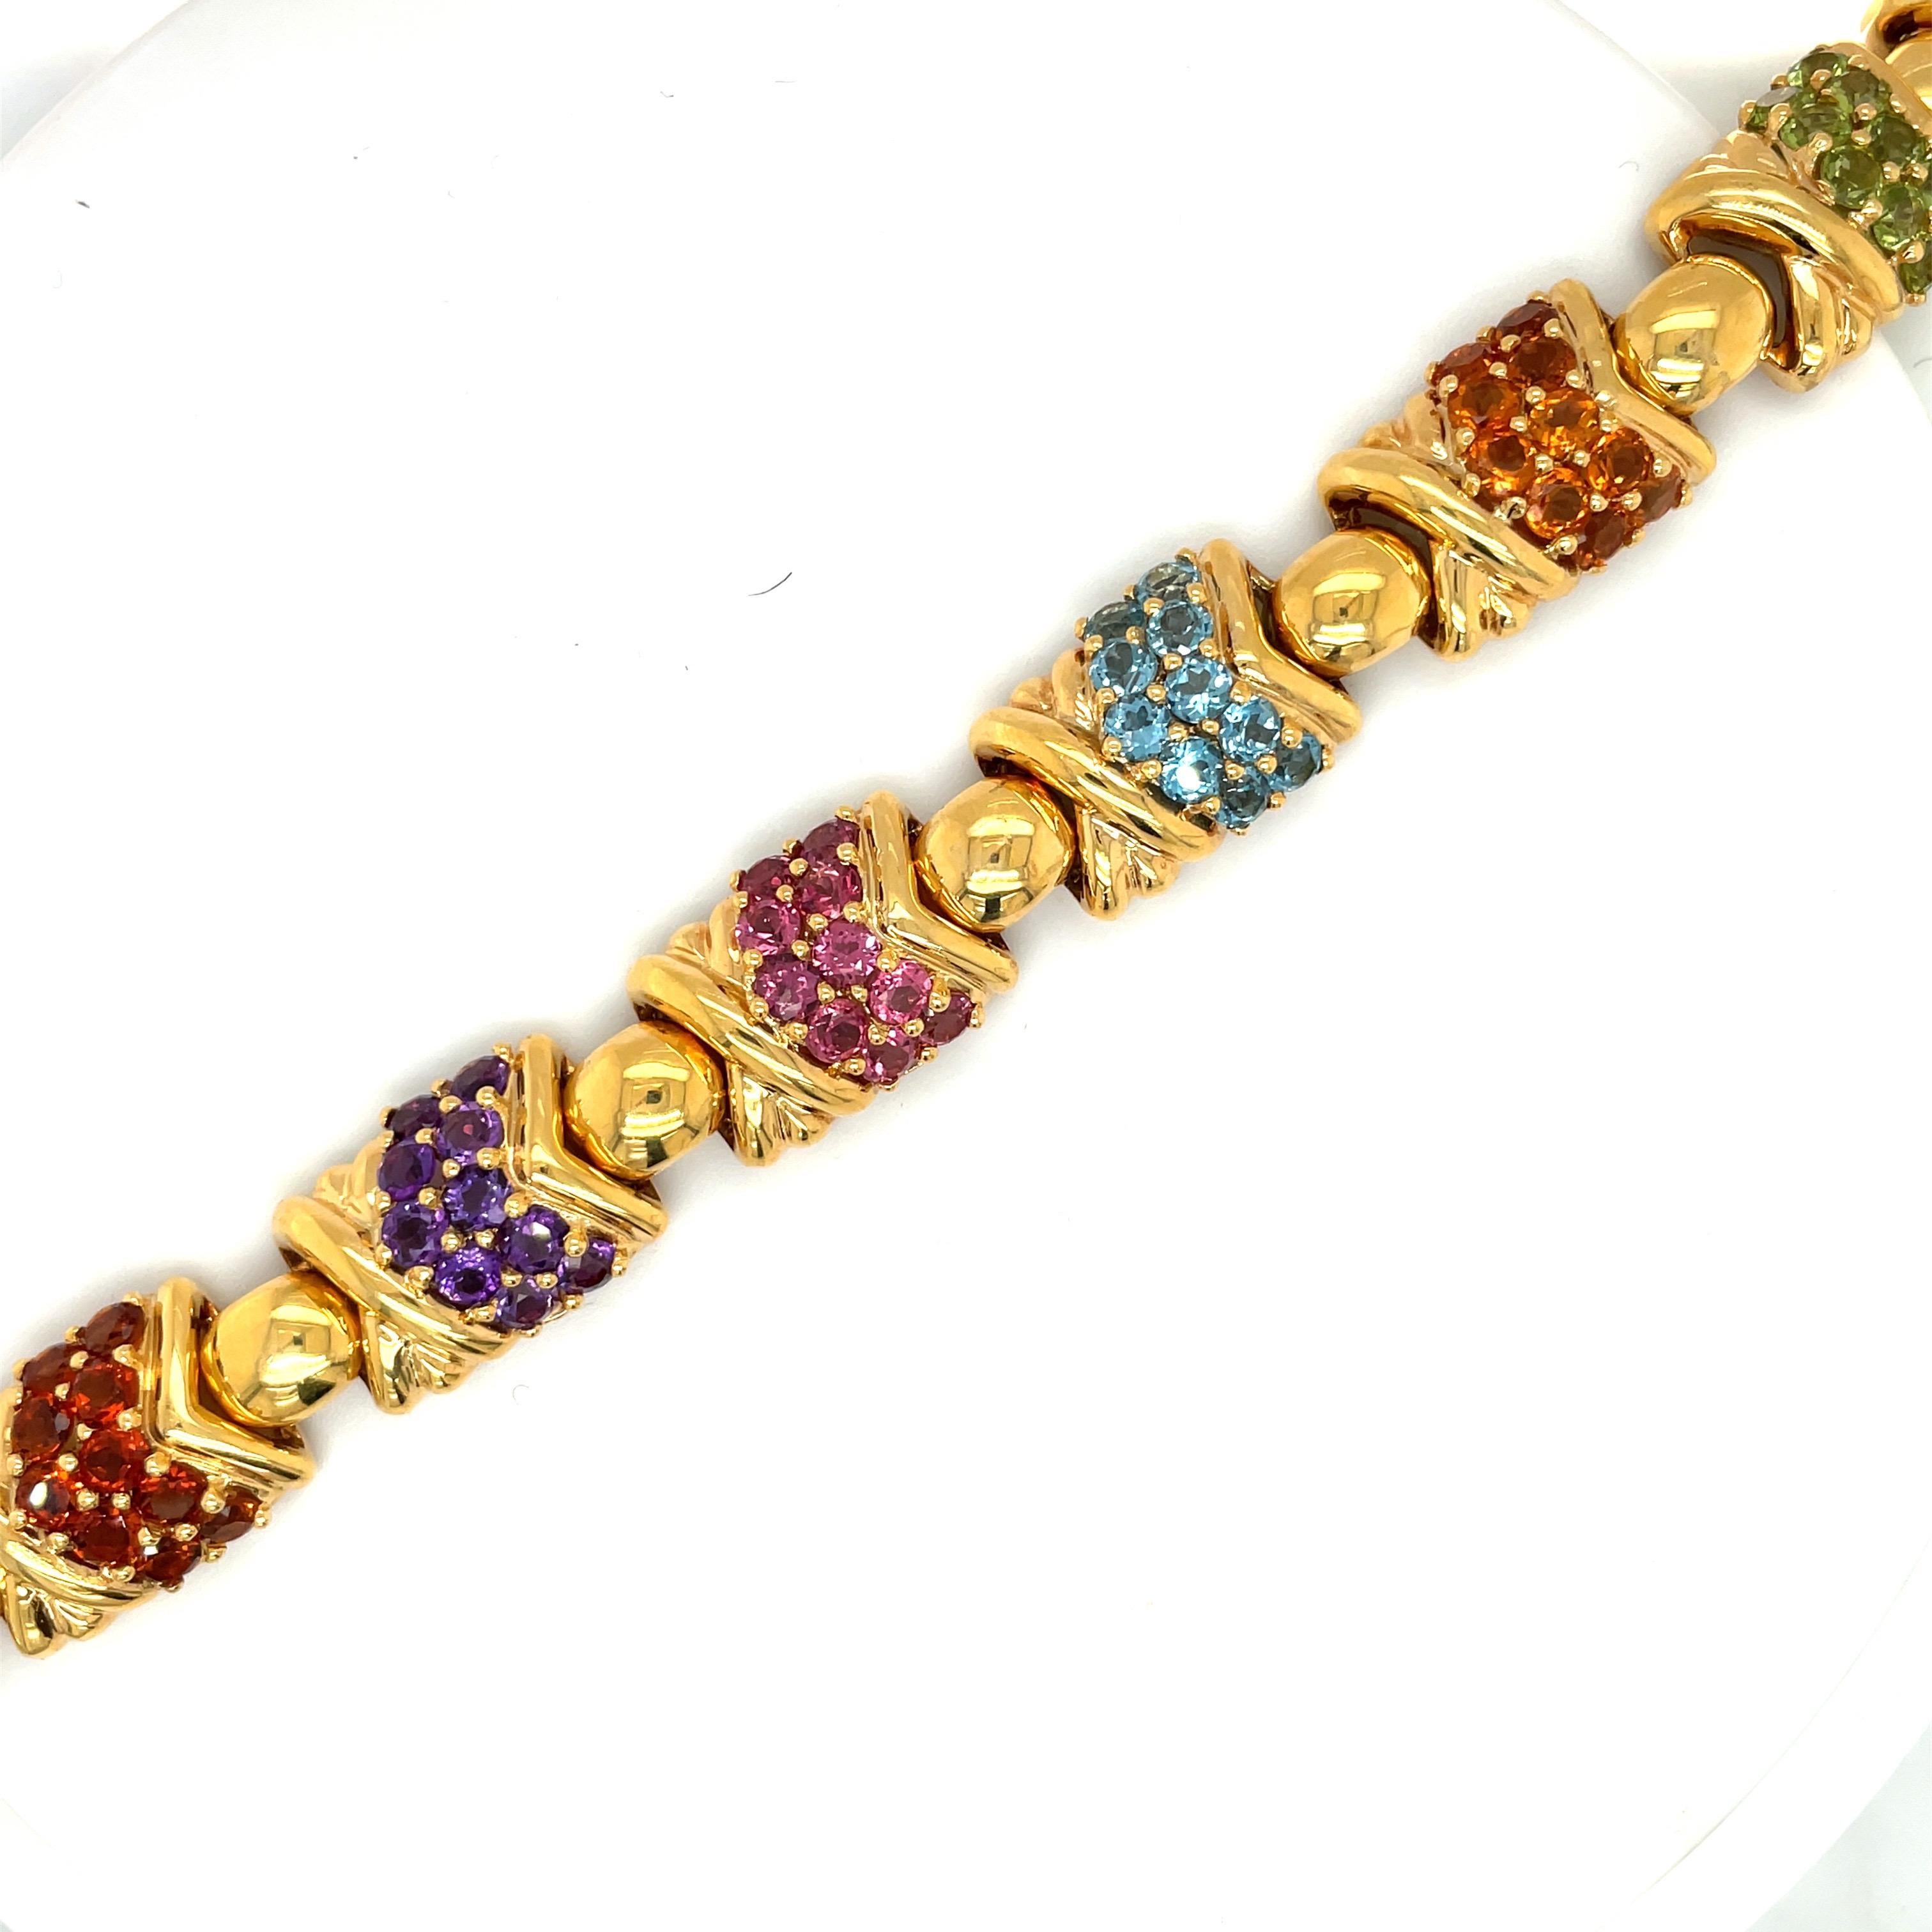 Dieses farbenfrohe Armband aus 18 Karat Gelbgold und Halbedelsteinen besteht aus 6 Teilen mit Halbedelsteinen und einem goldenen 